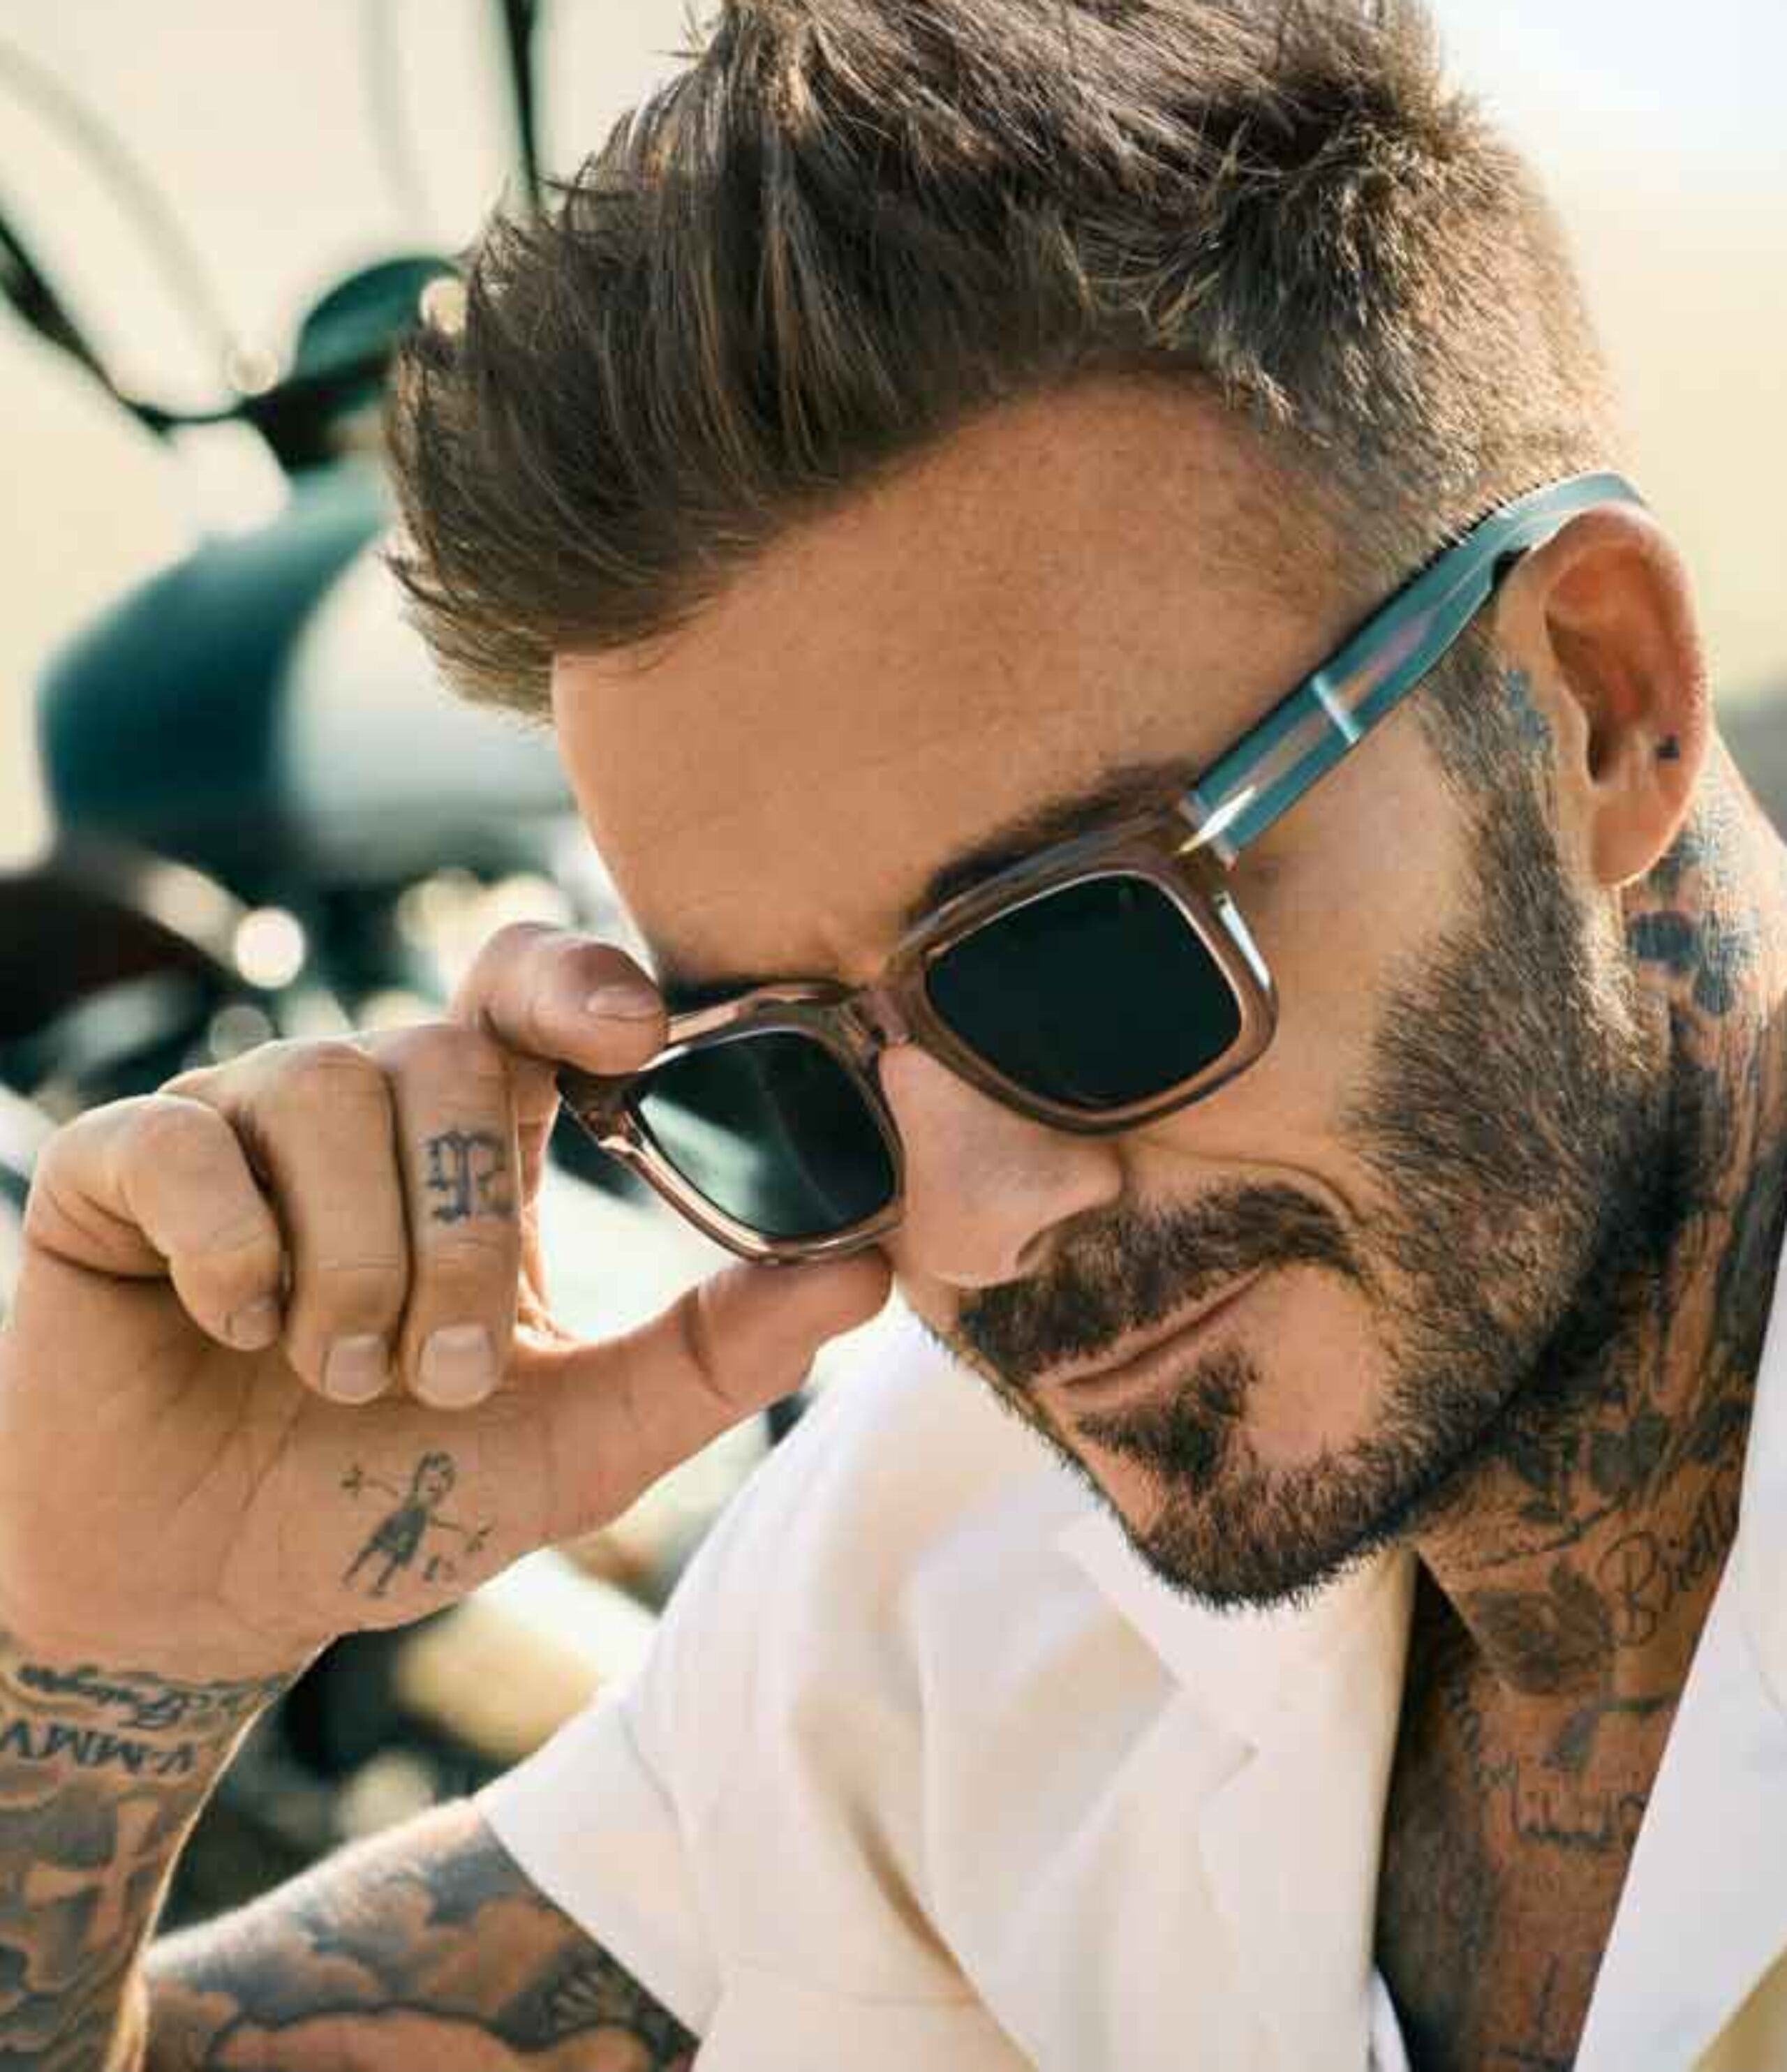 David Beckham eyewear • Frames and Faces Deinze